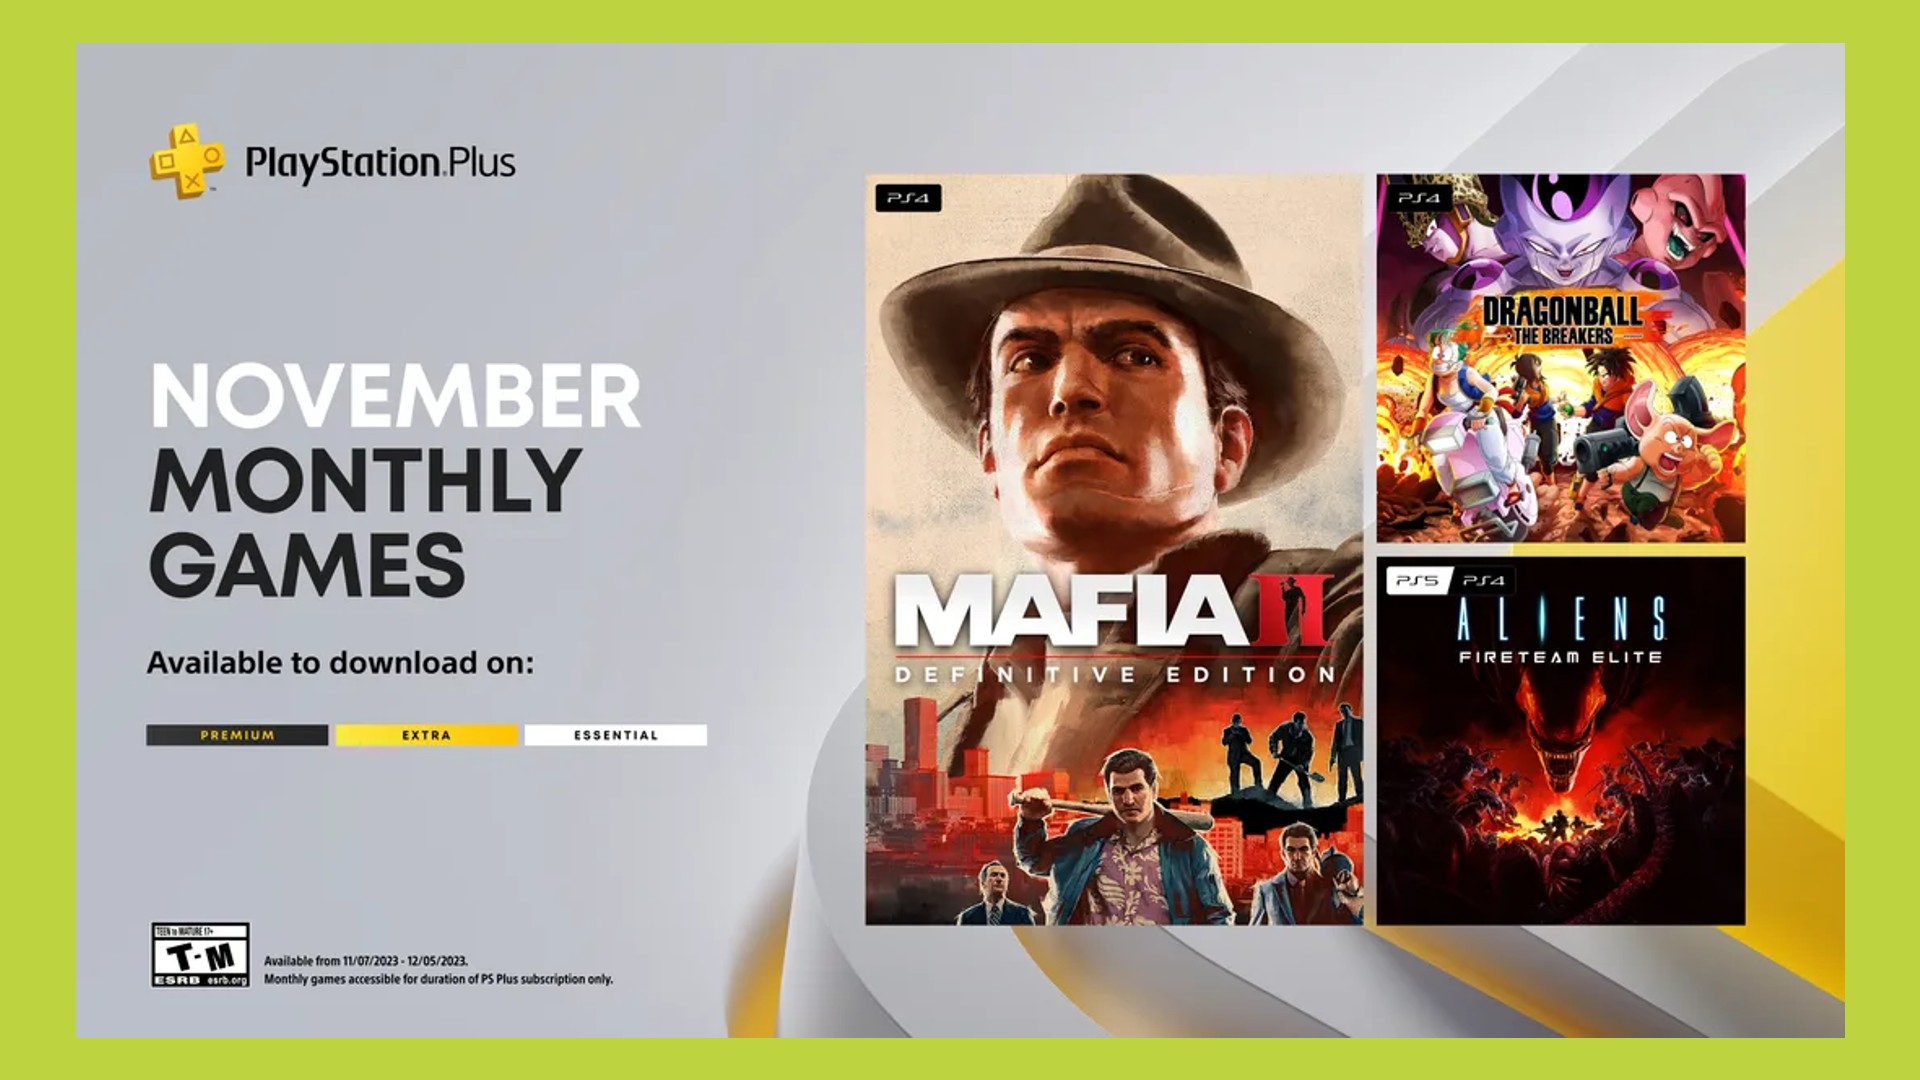 PlayStation Plus Info, FAQ & Help Thread  Black Friday Edition 18th Nov -  28th Nov : r/PlayStationPlus